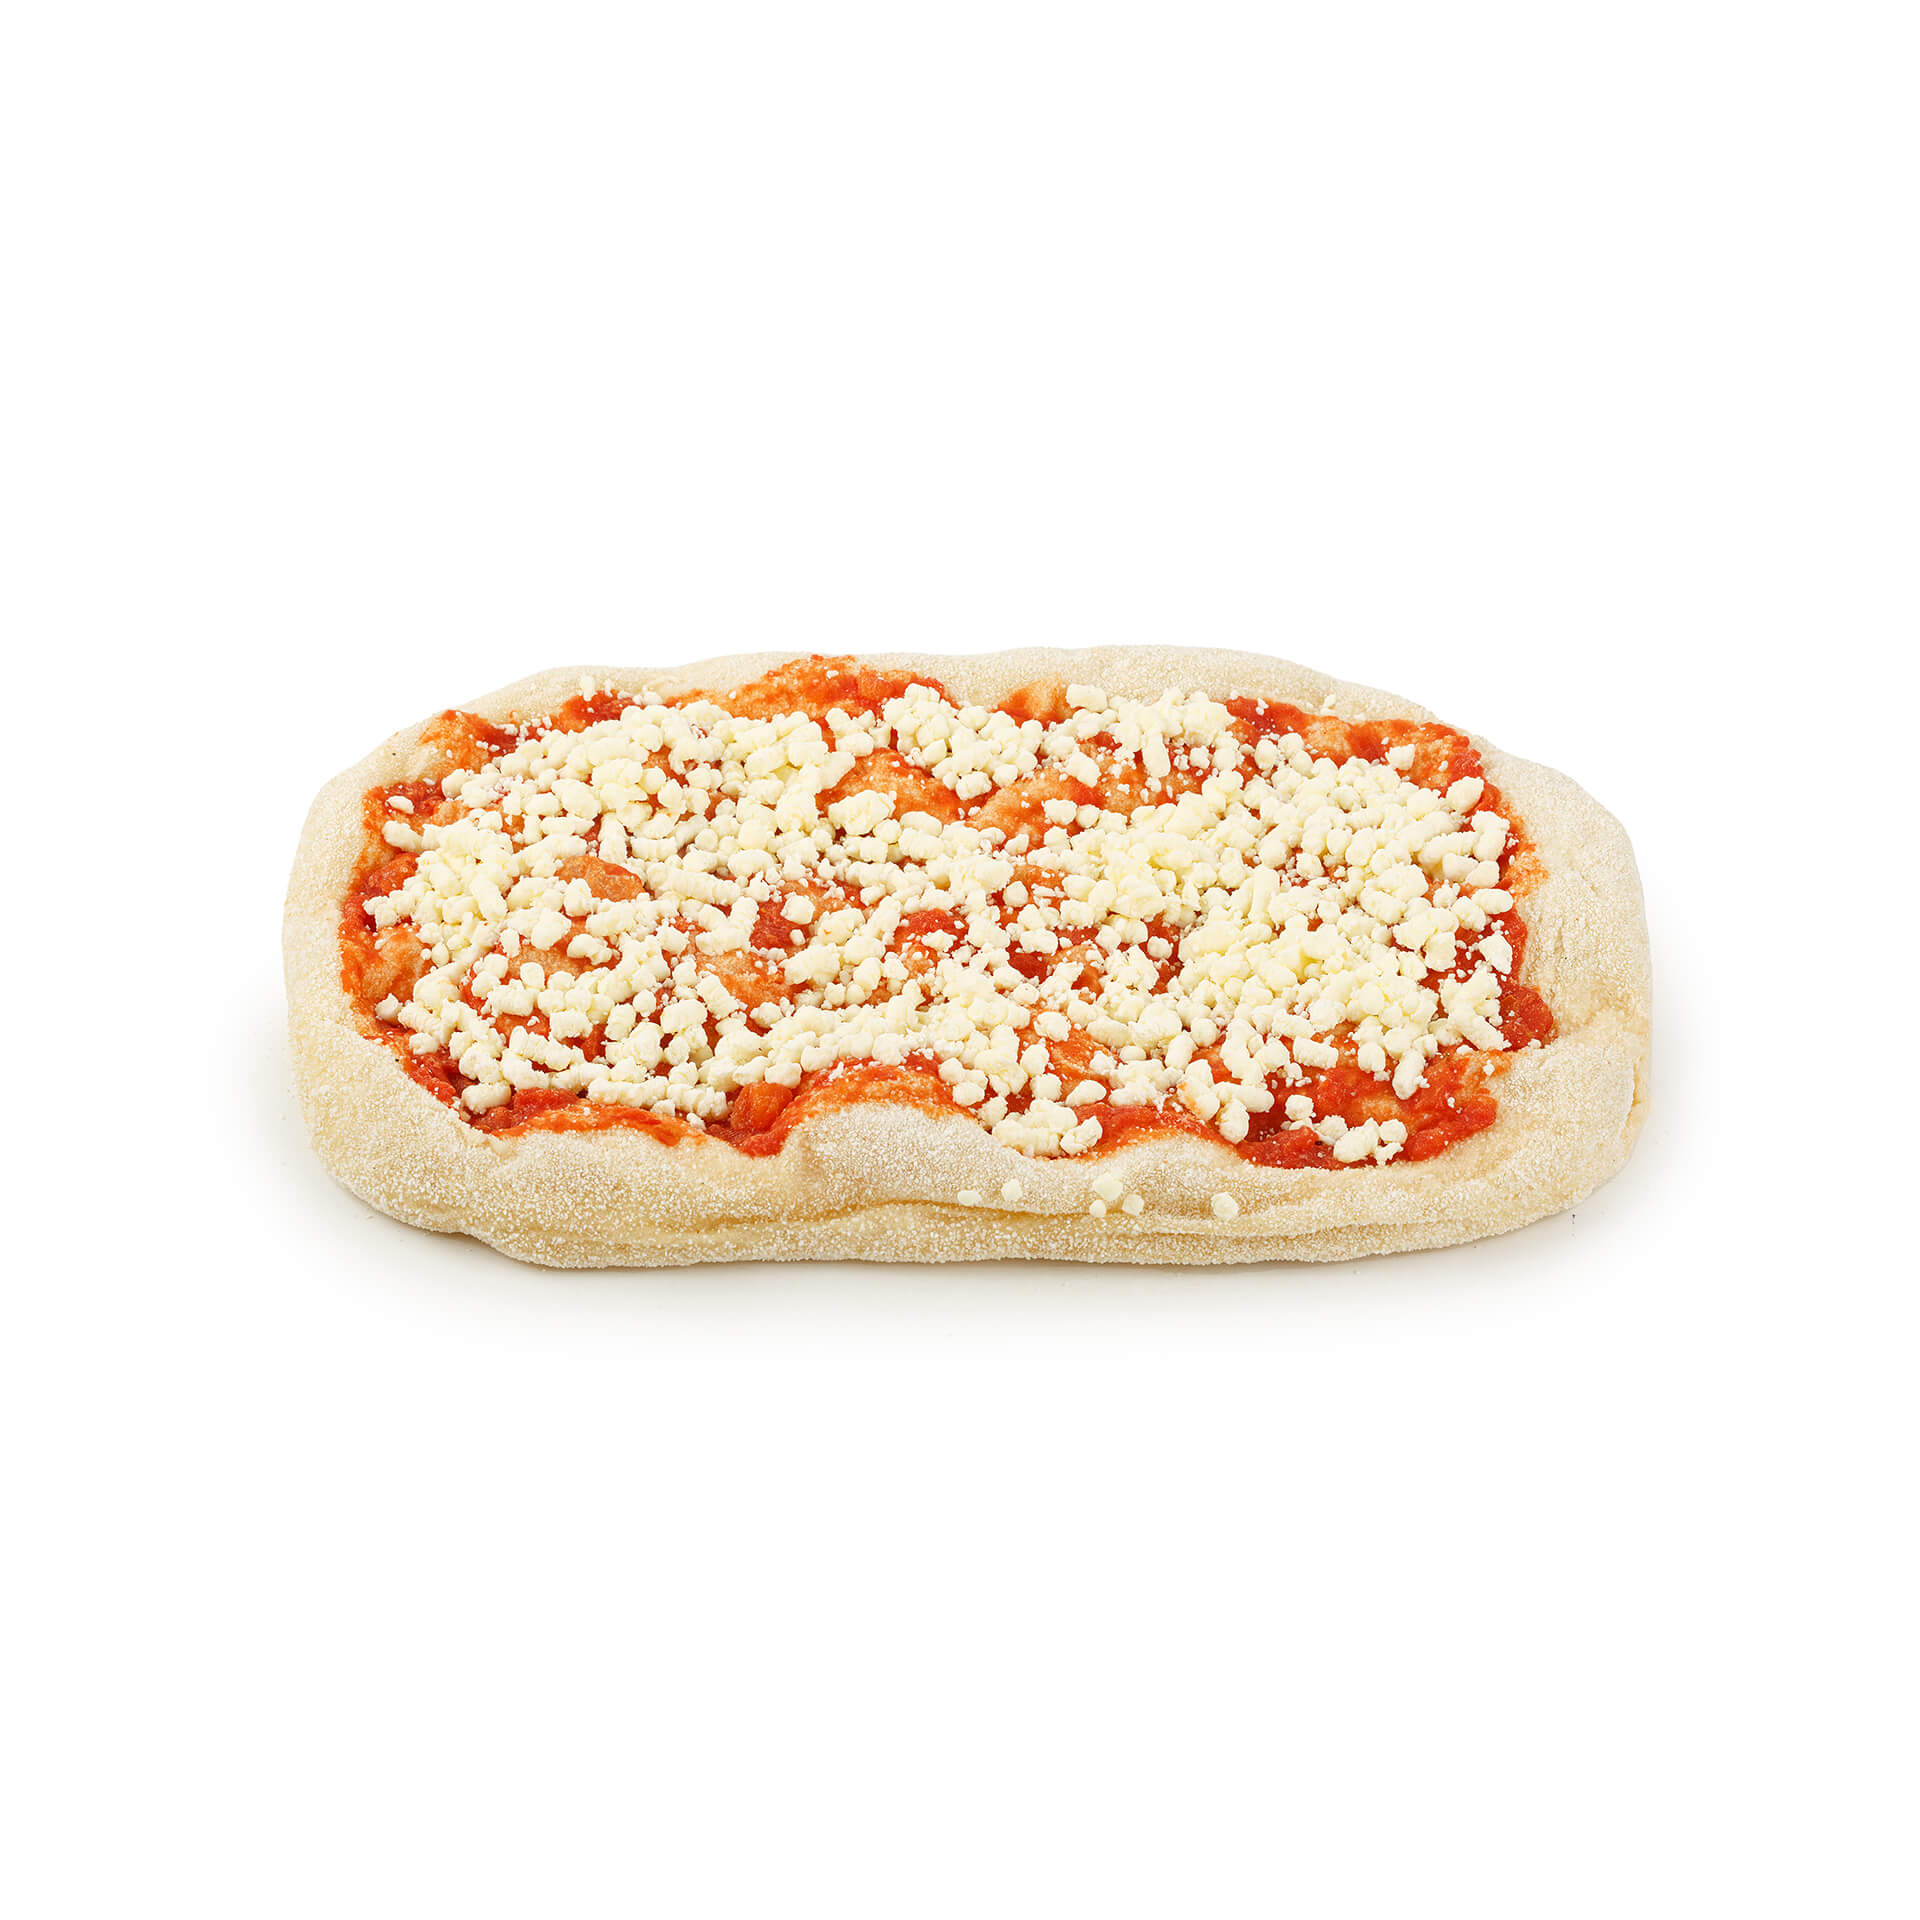 Пицца "Маргарита" с моцареллой полуфабрикат замороженный Maestrello 370 г 8703LED, общий вид, купить оптом с доставкой по москве и московской области, недорого, низкая цена